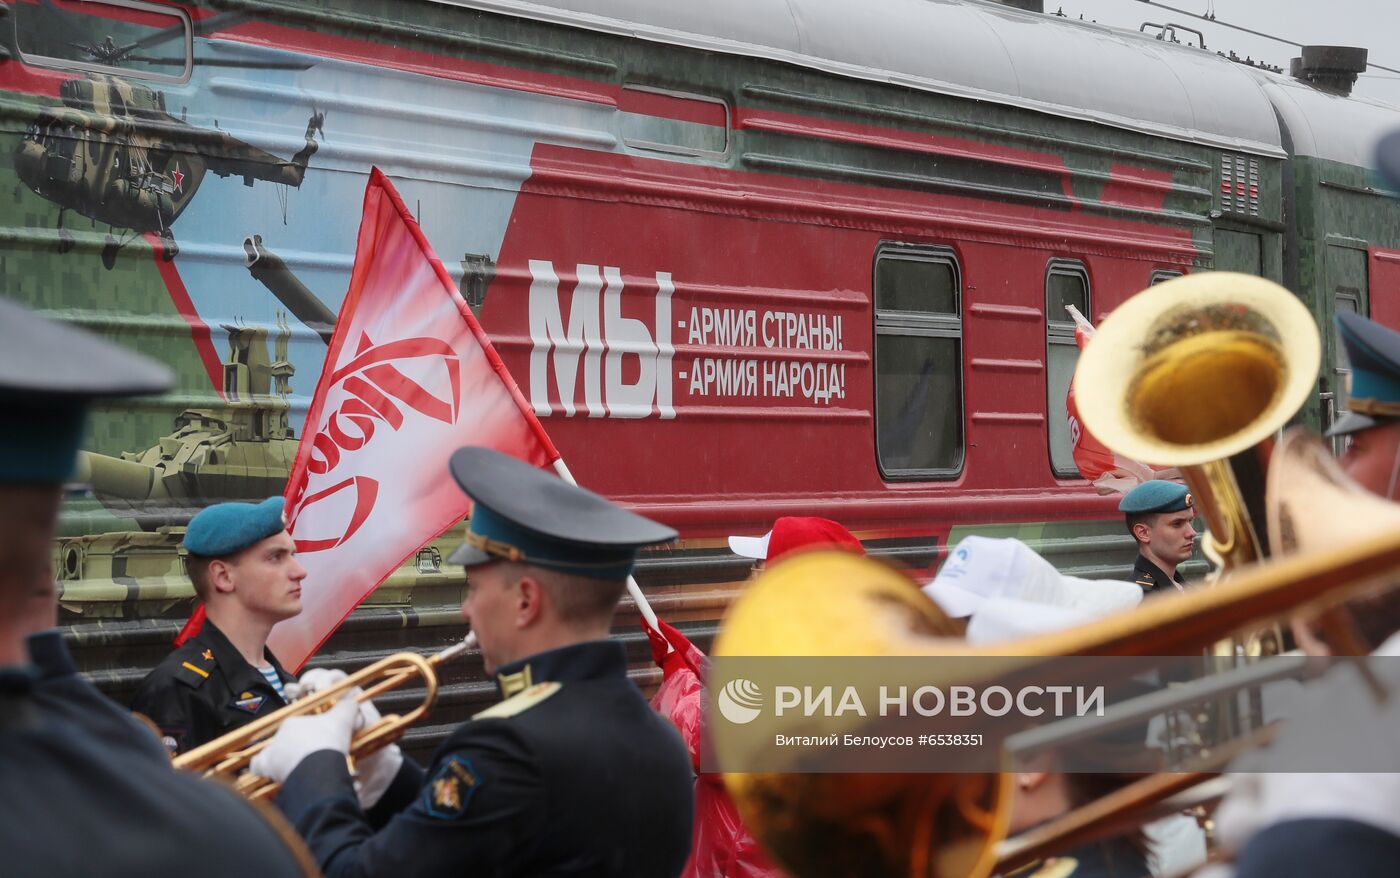 Агитационный тематический поезд "Мы - армия страны! Мы - армия народа!"